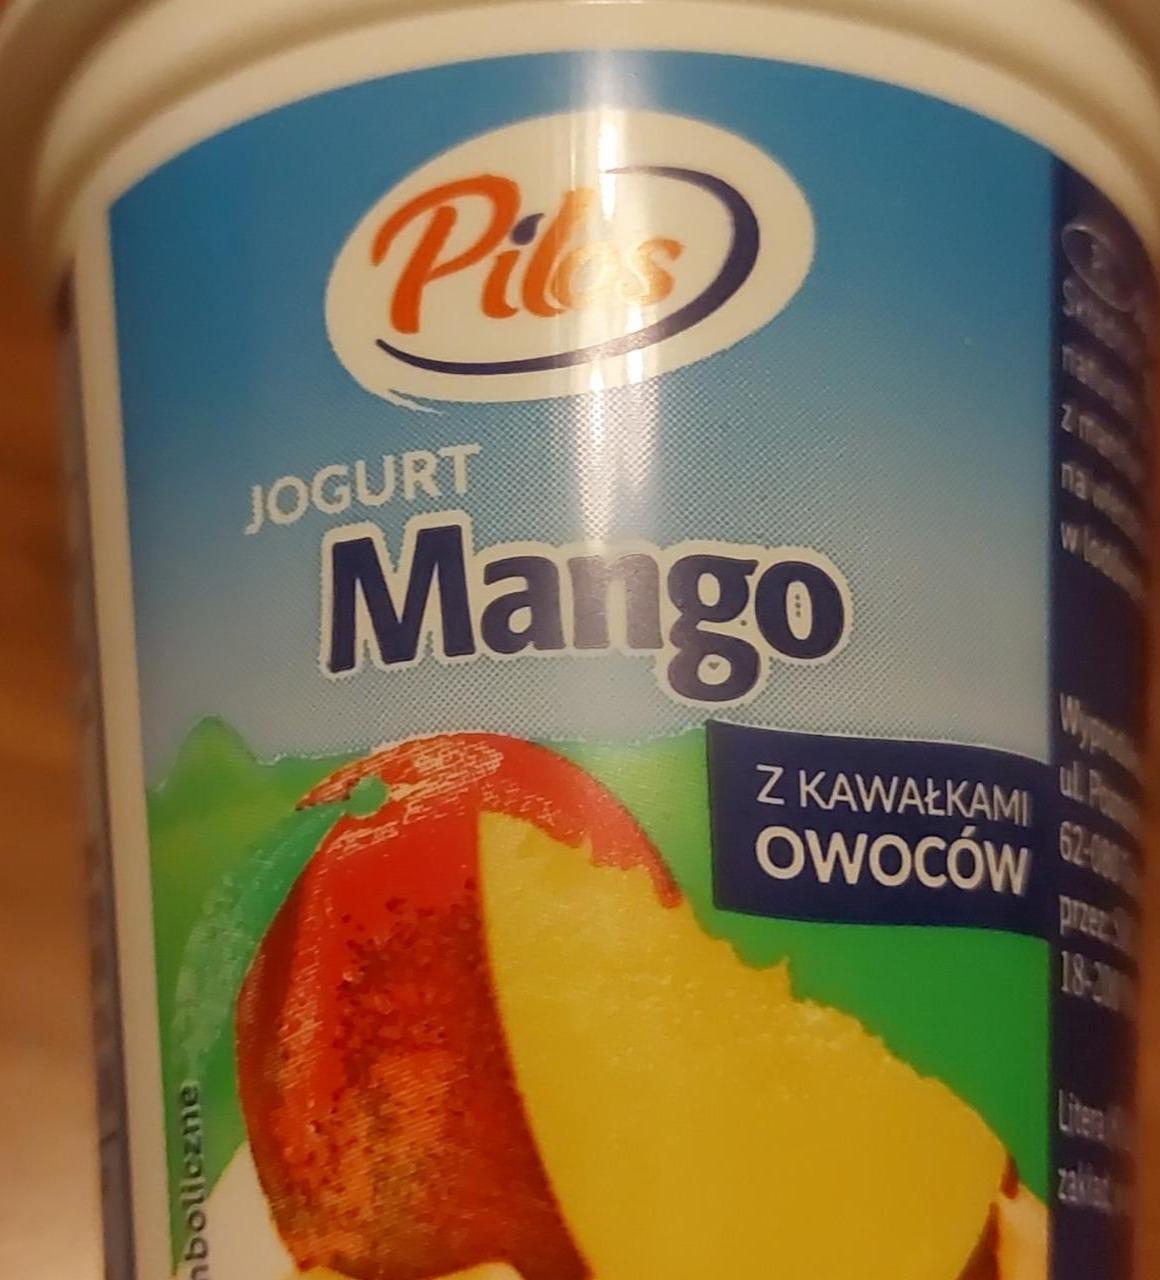 Фото - Йогурт зі шматочками фруктів Манго Pilos